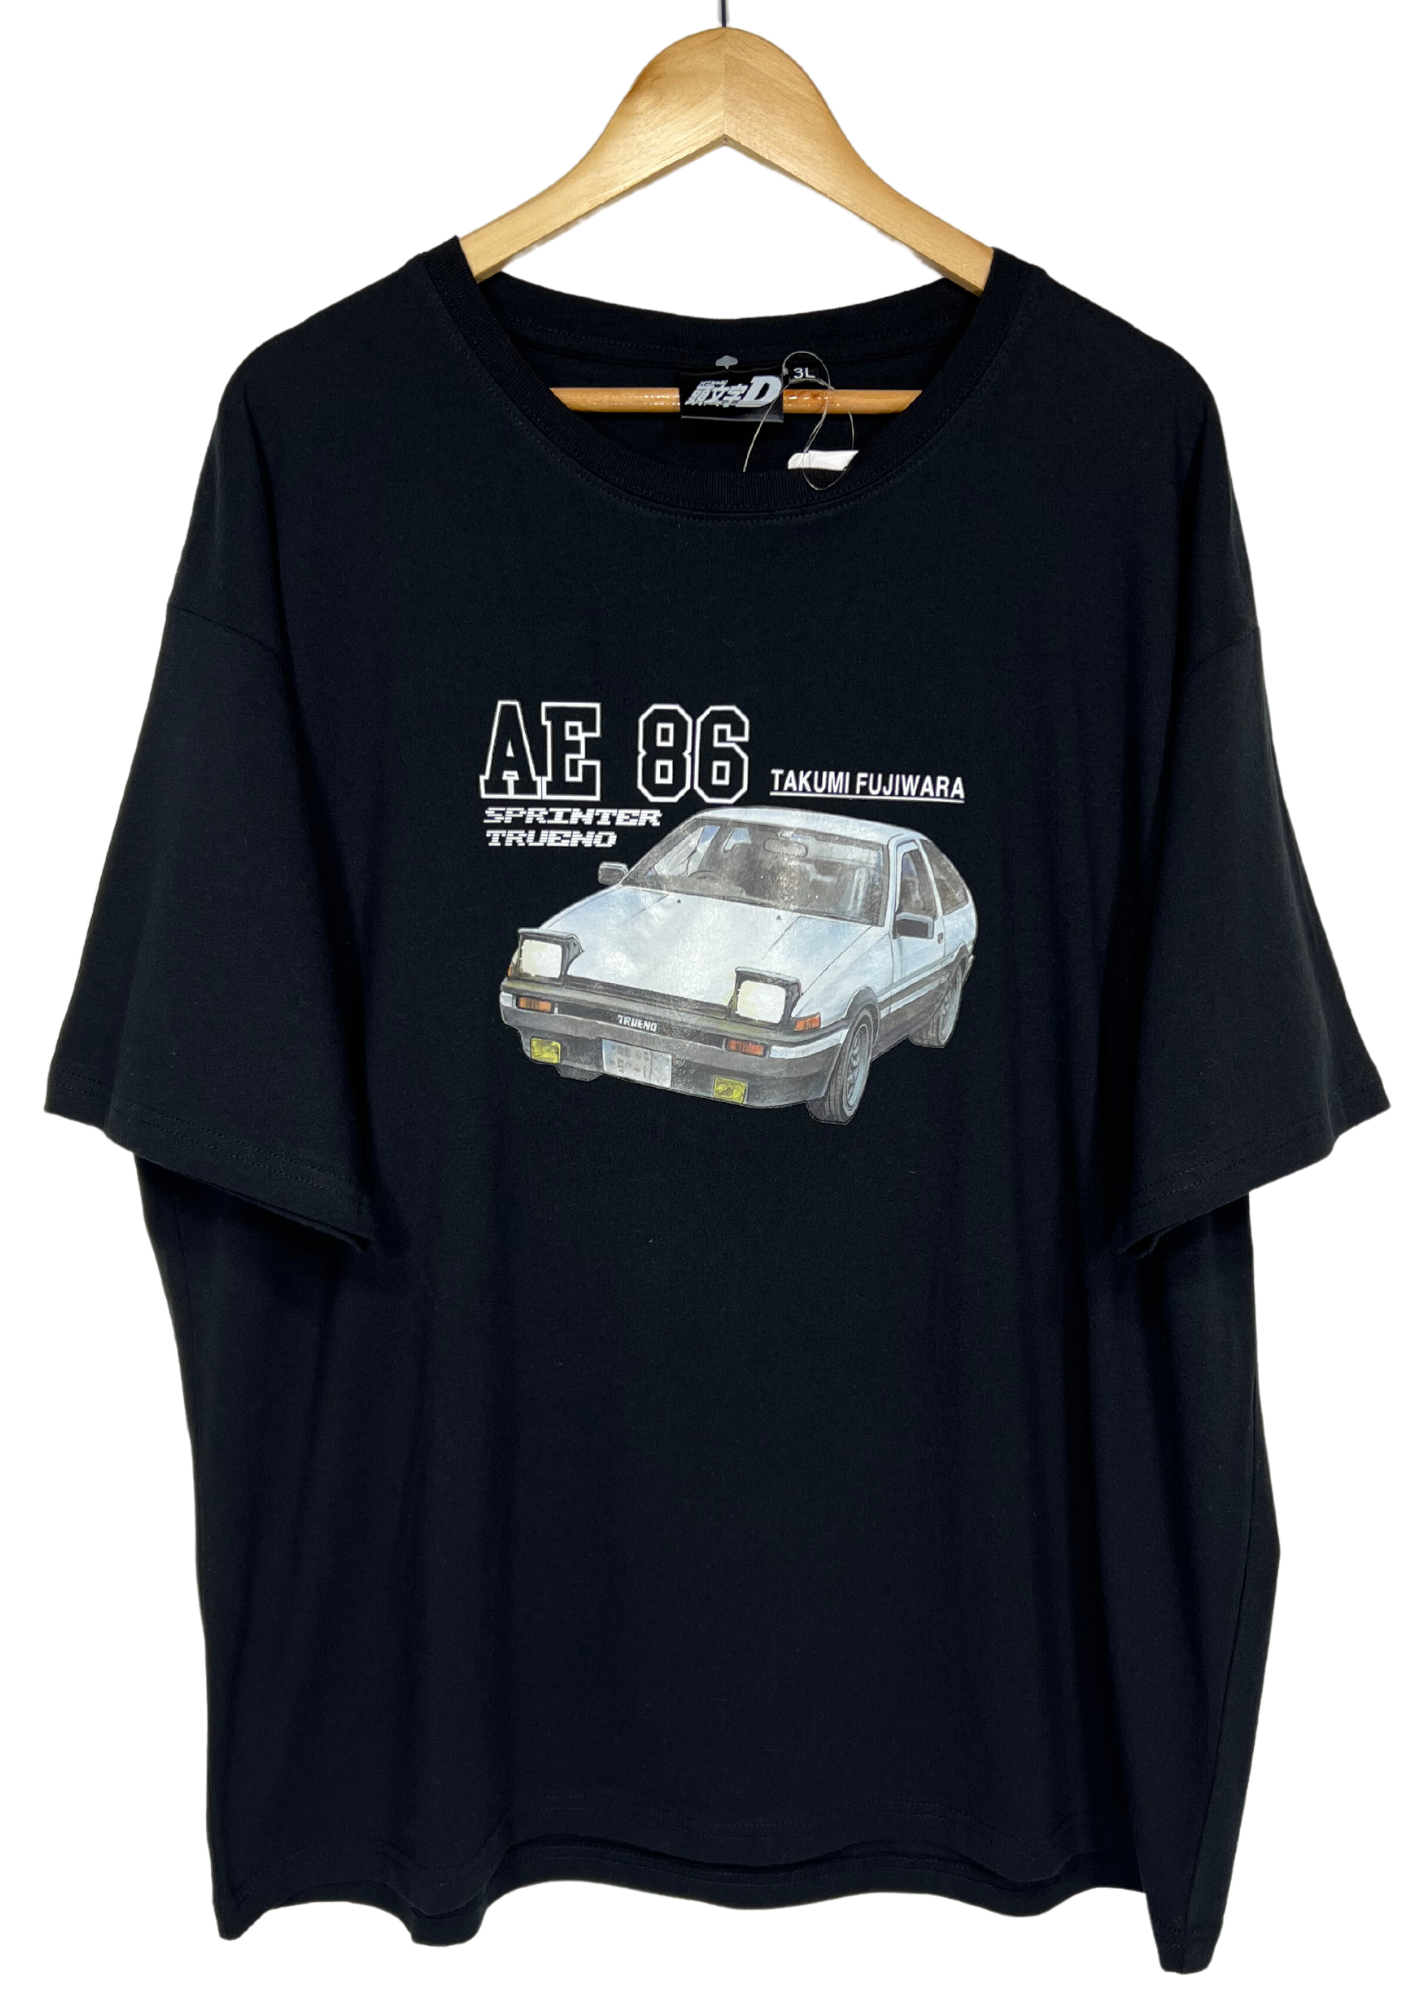 Initial D x AVAIL AE 86 T-shirt